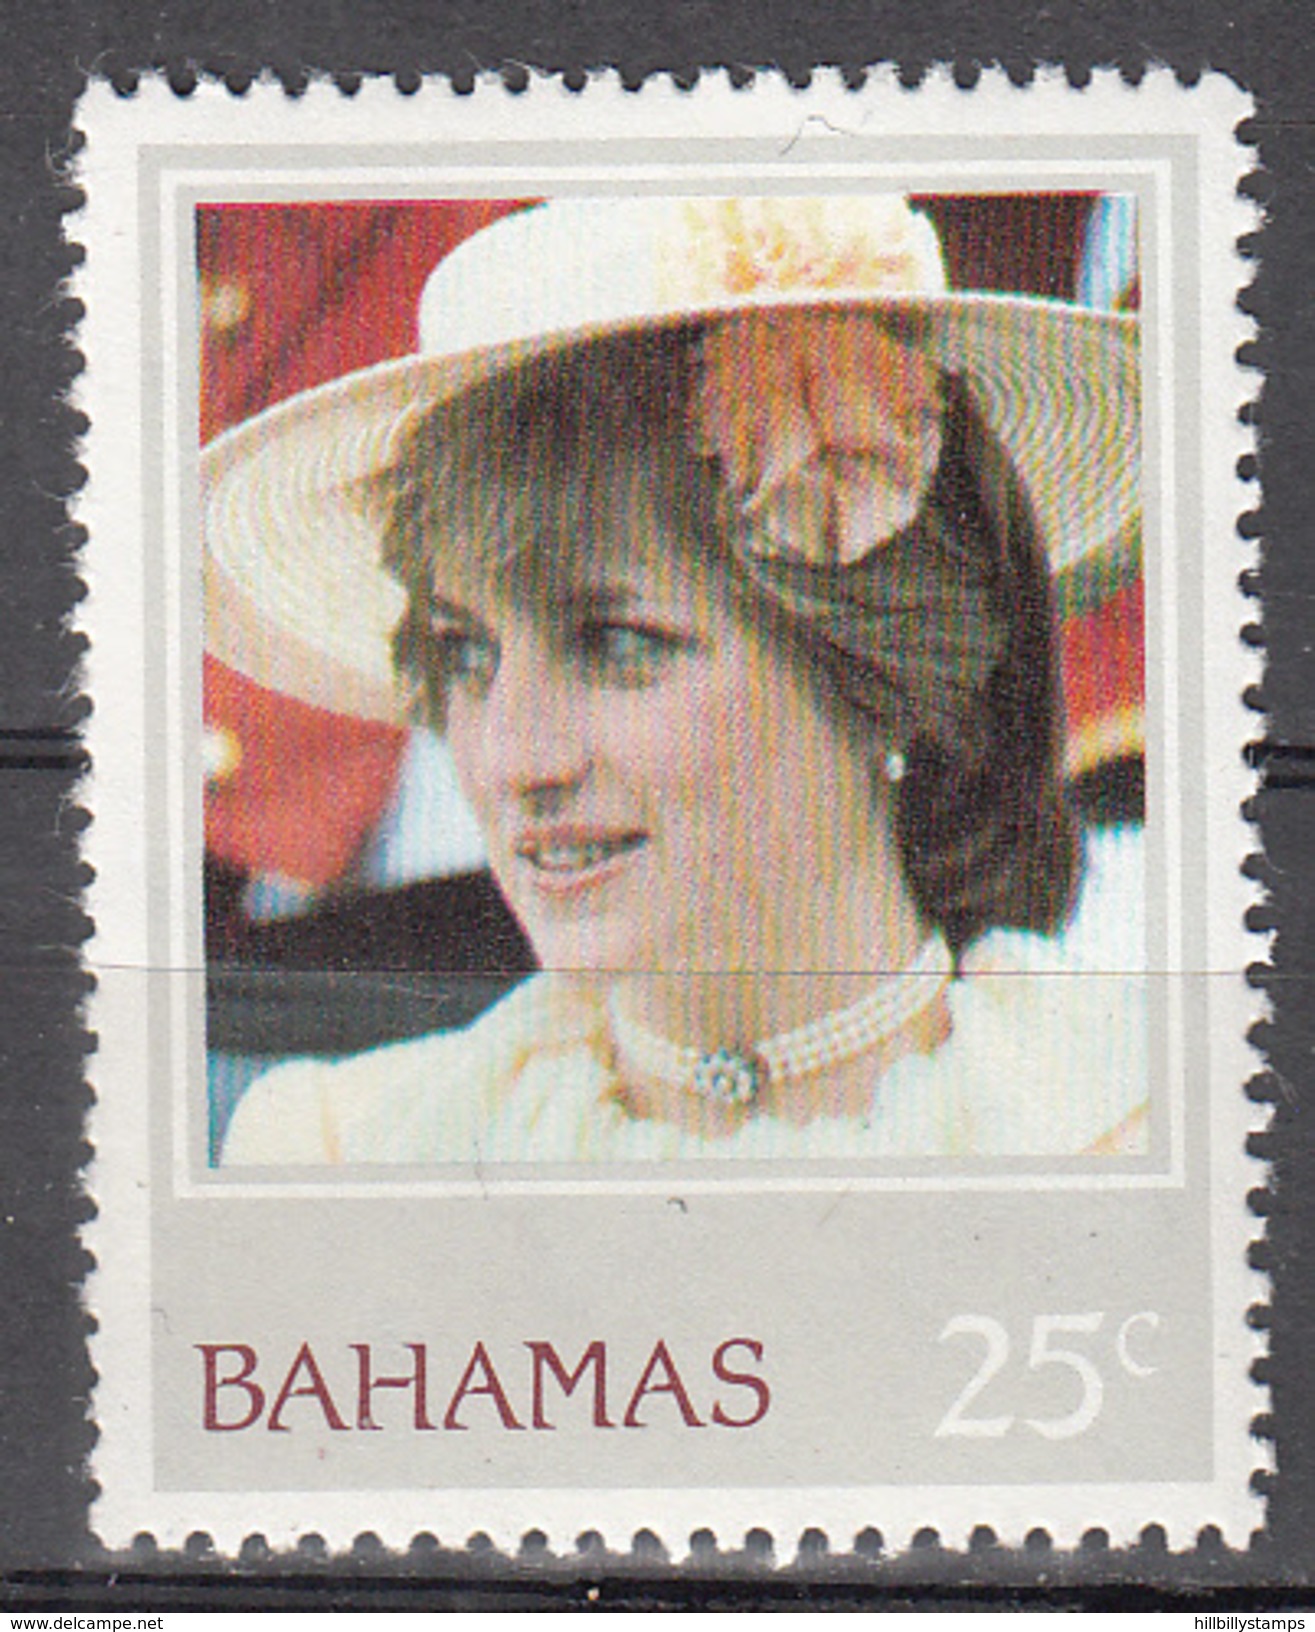 BAHAMAS      SCOTT NO.  511      MNH       YEAR  1982 - Bahamas (1973-...)